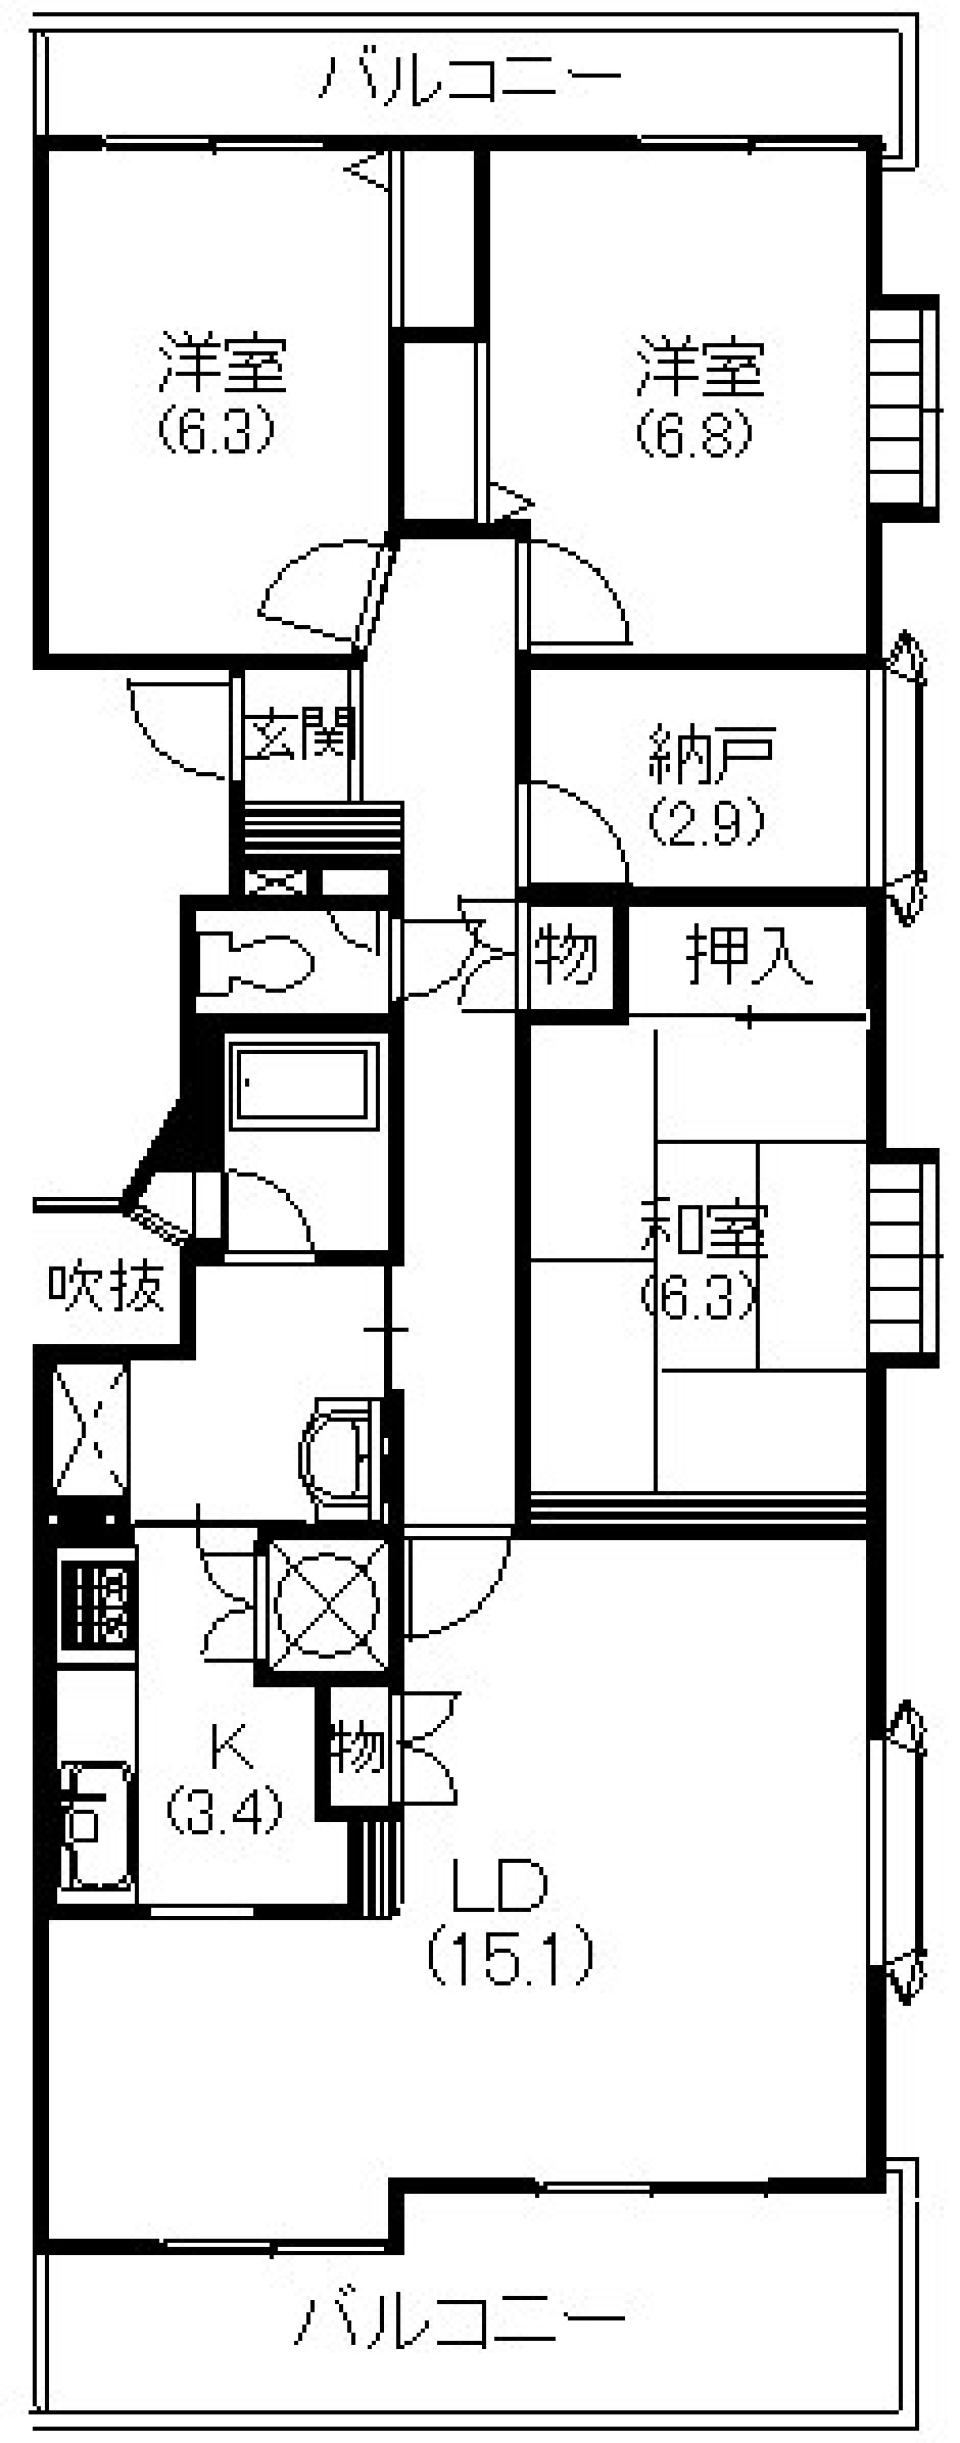 浜松市街中を望む、家族での新しい暮らしの間取り図